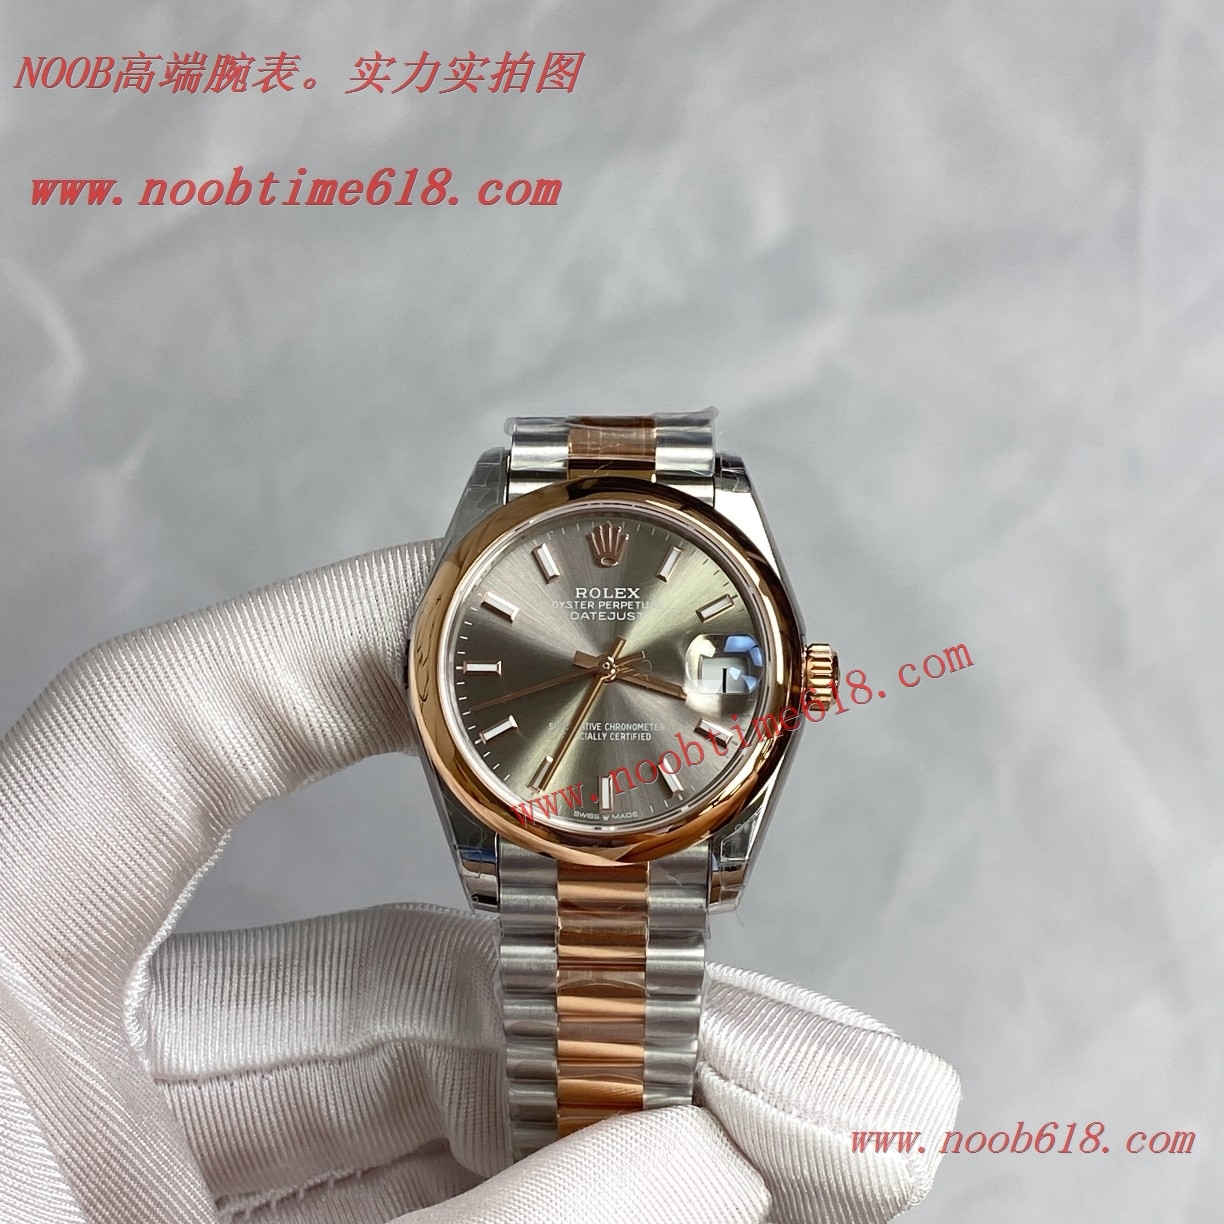 臺灣仿錶,香港仿錶,仿錶,N廠,複刻手錶,GS工廠手錶勞力士蠔式恒動日誌型31mm系列腕表仿錶